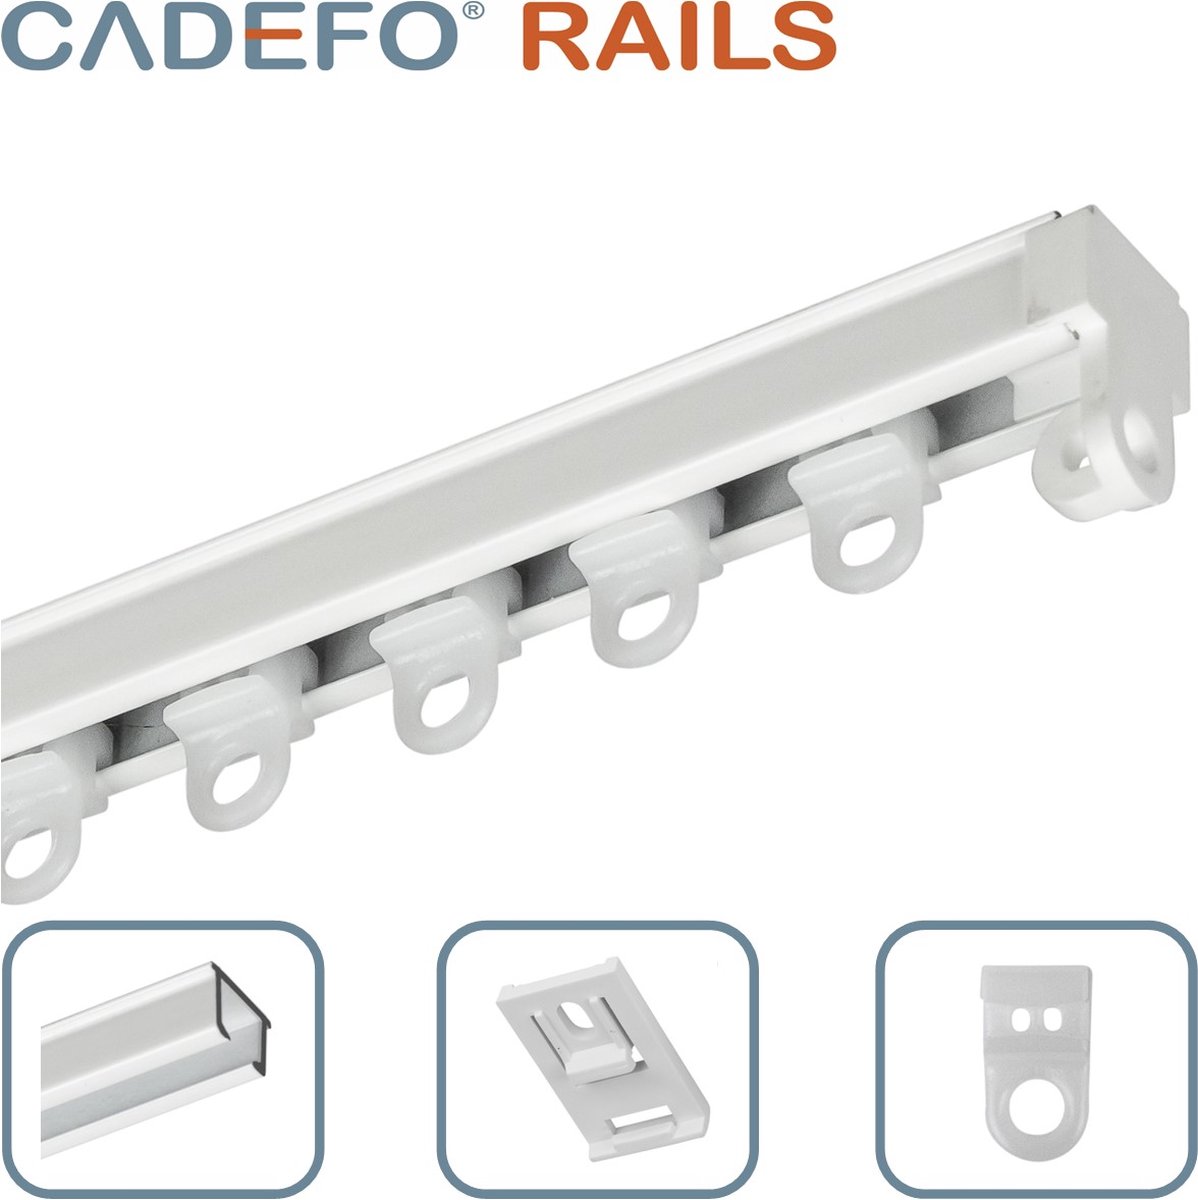 CADEFO RAILS (101 - 150 cm) Gordijnrails - Compleet op maat! - UIT 1 STUK - Leverbaar tot 6 meter - Plafondbevestiging - Lengte 114 cm